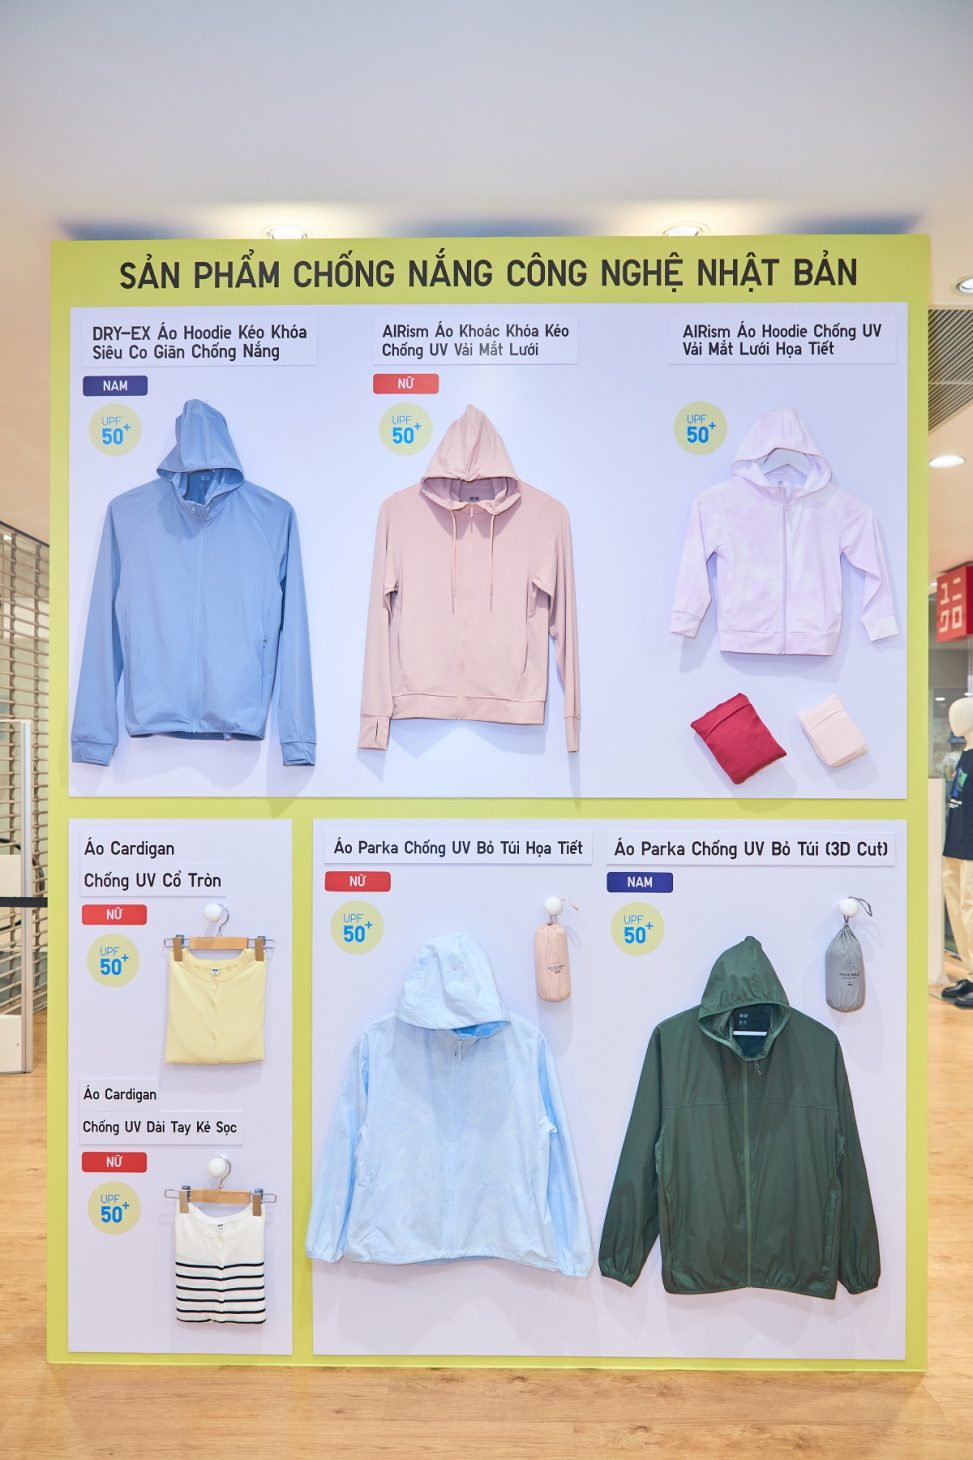 Quần áo chống nắng mới của UNIQLO chặn hơn 90% tia UV - 7.3 Da dang san pham chong nang ve Chat Lieu Kieu Dang Phong Cach